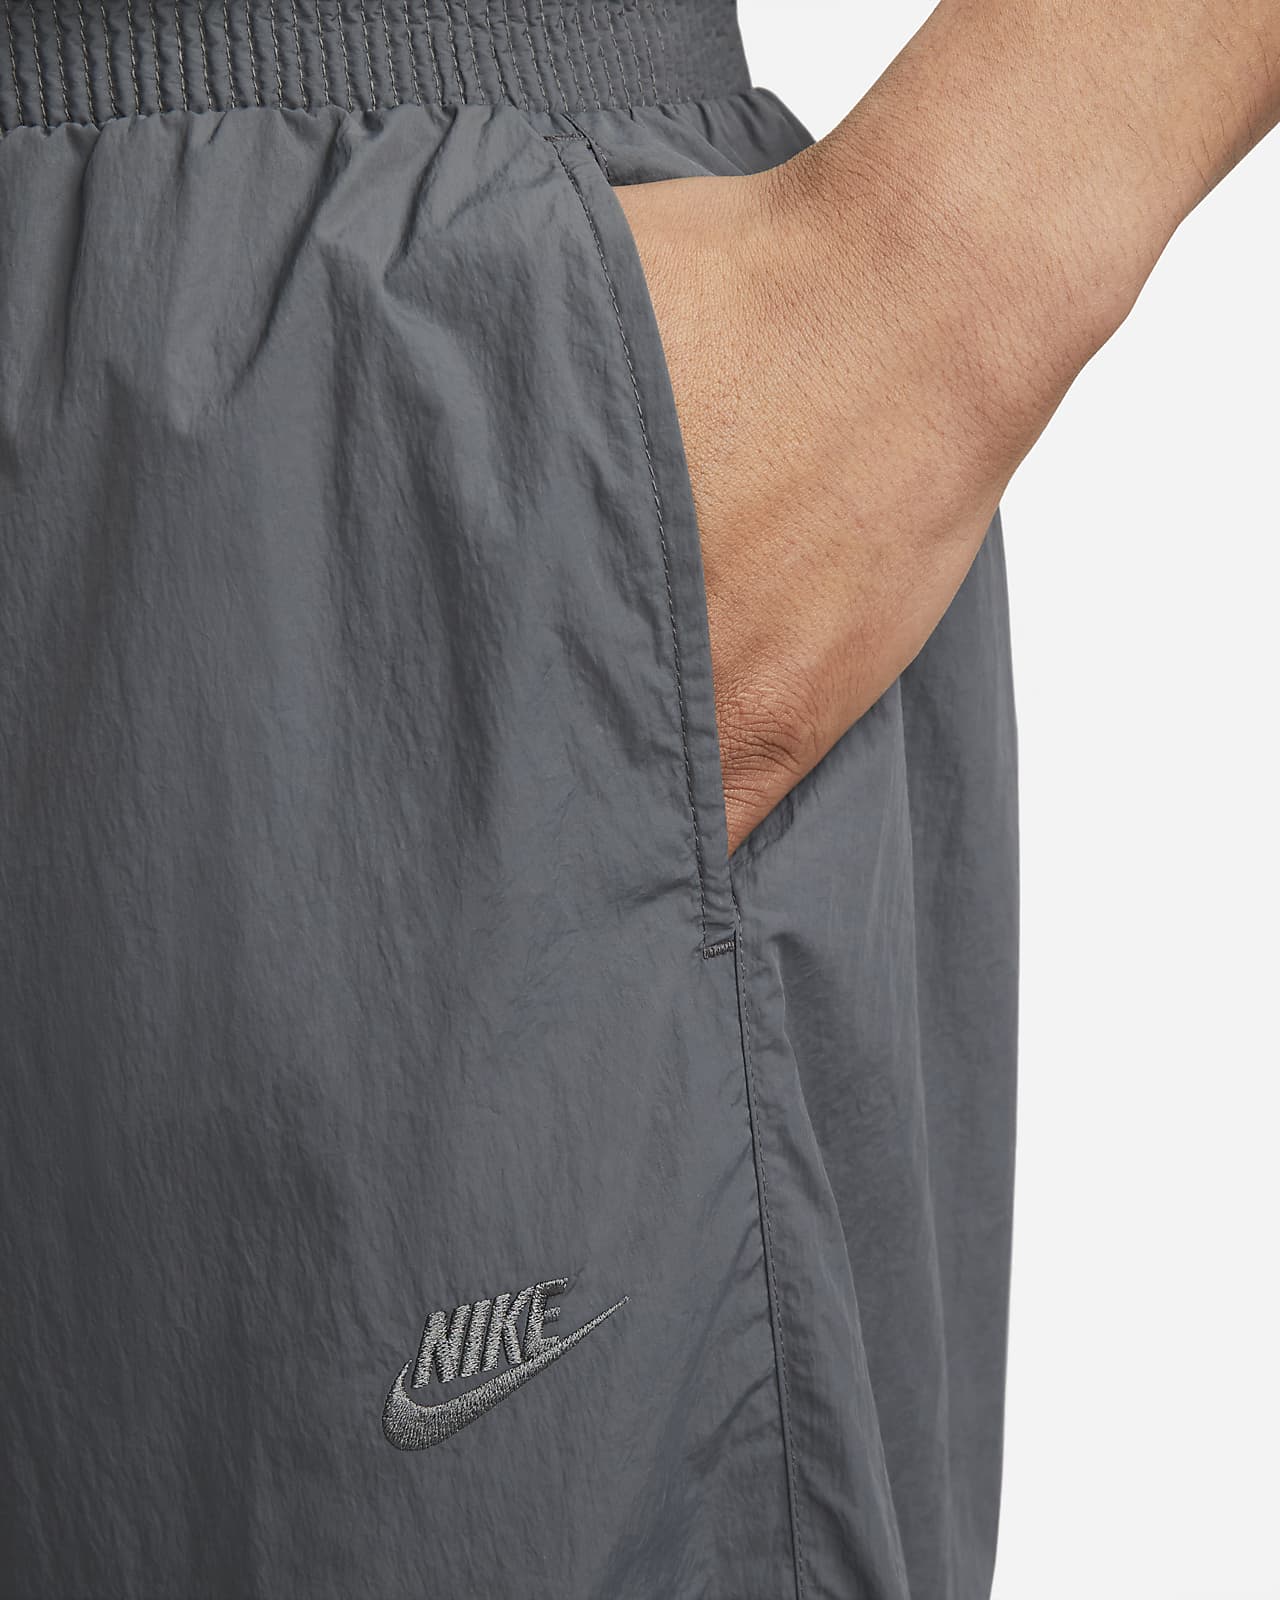 Nike Size S Sportswear Men's Swoosh Cuffed Woven Track pants